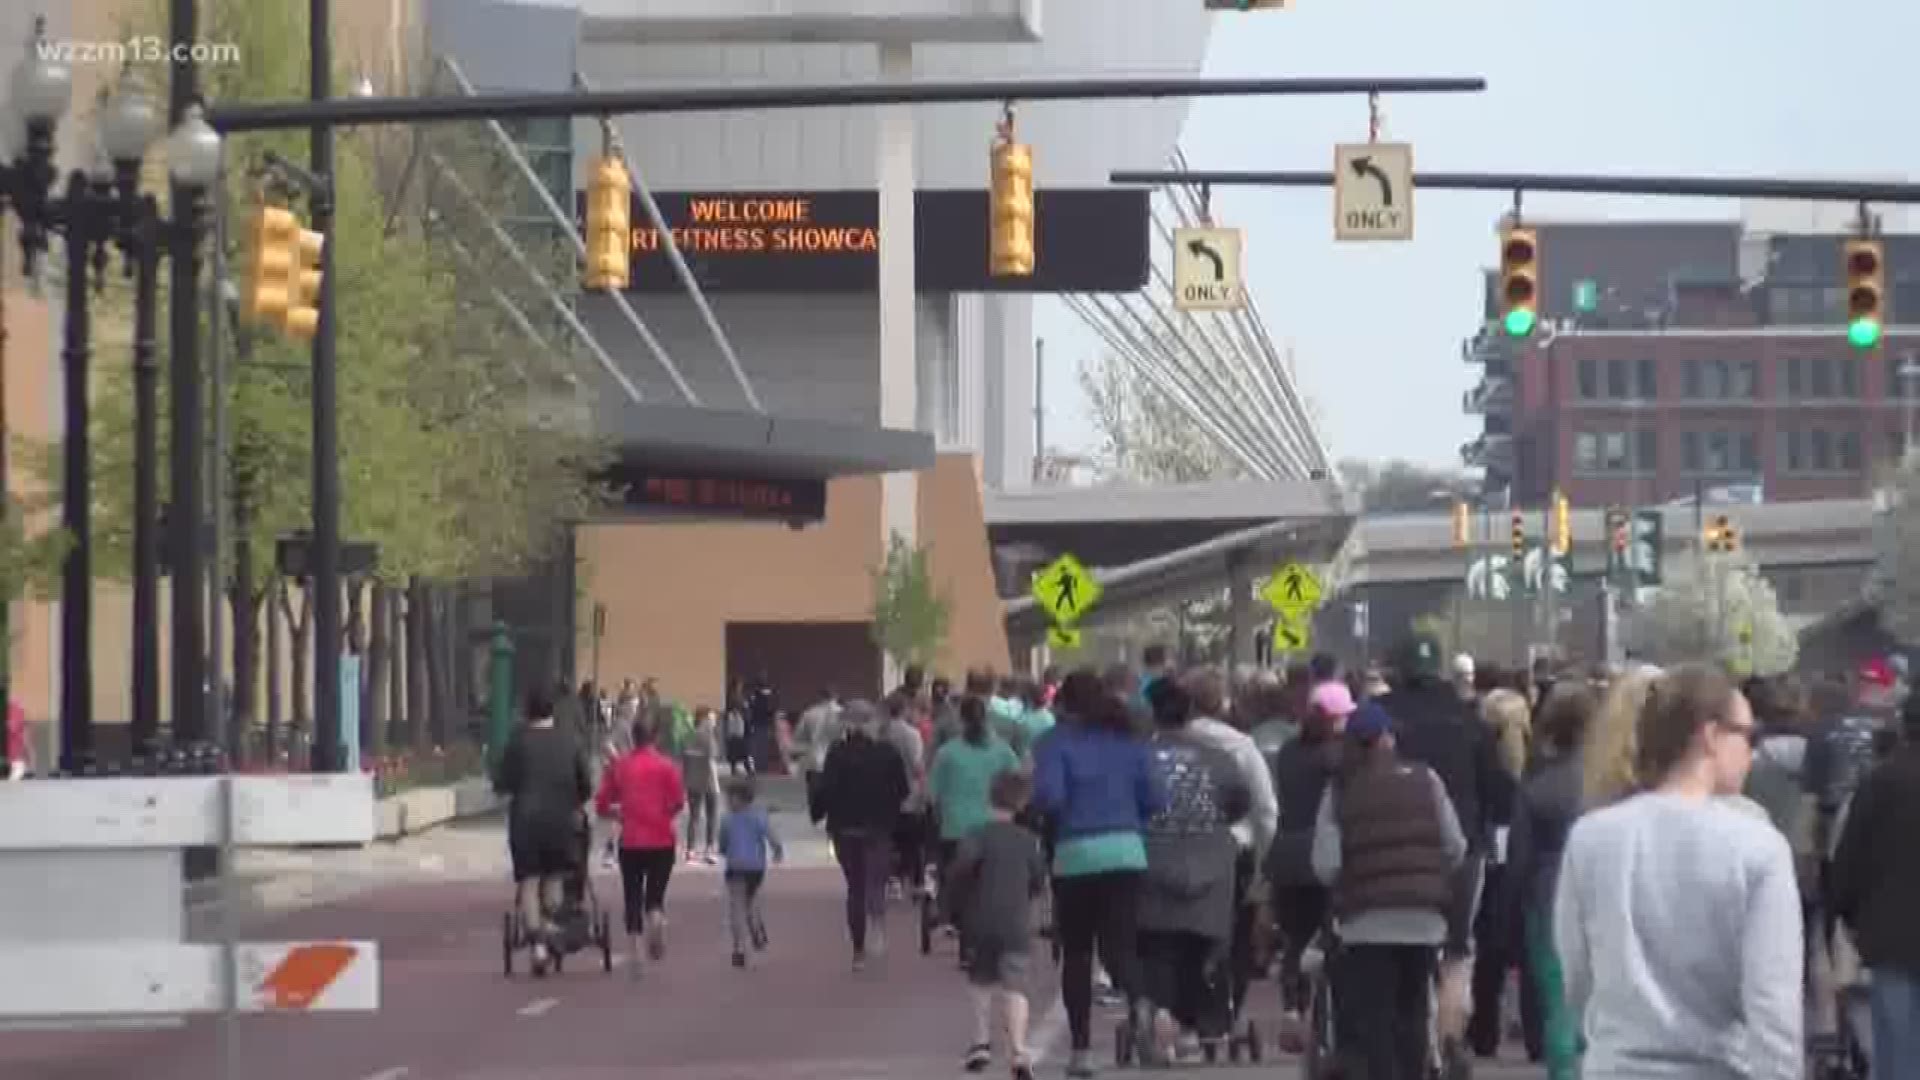 More than 1,500 participate in Nana's Run